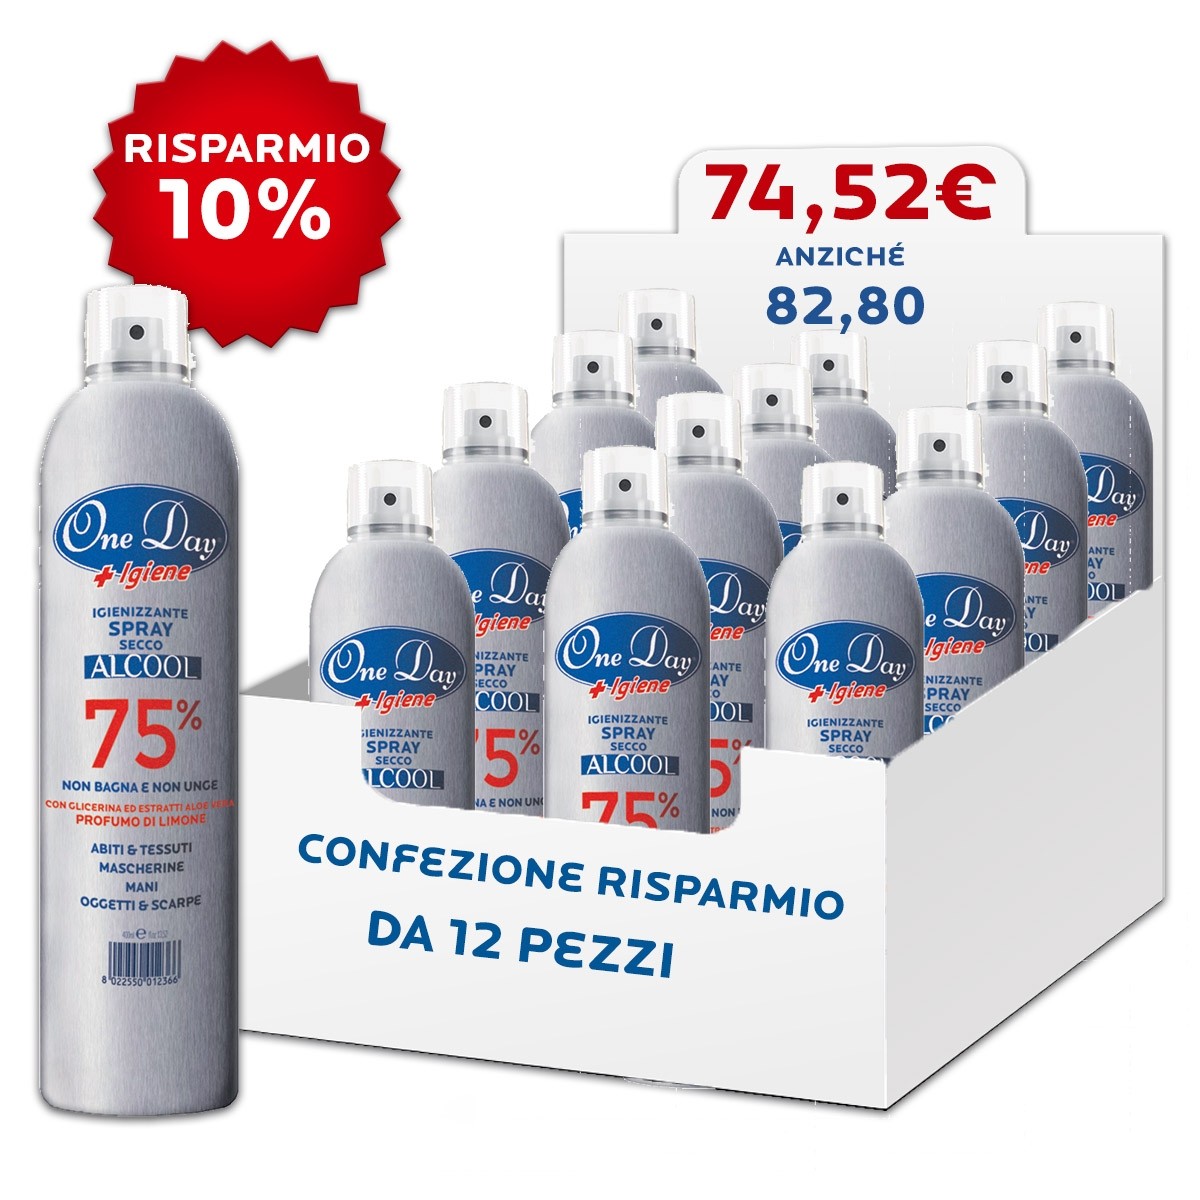 1,90 € – Spray Igienizzante da 150 ml Selfcare – 1 Lotto (100.000 pezzi) –  Orizzonte Sanità